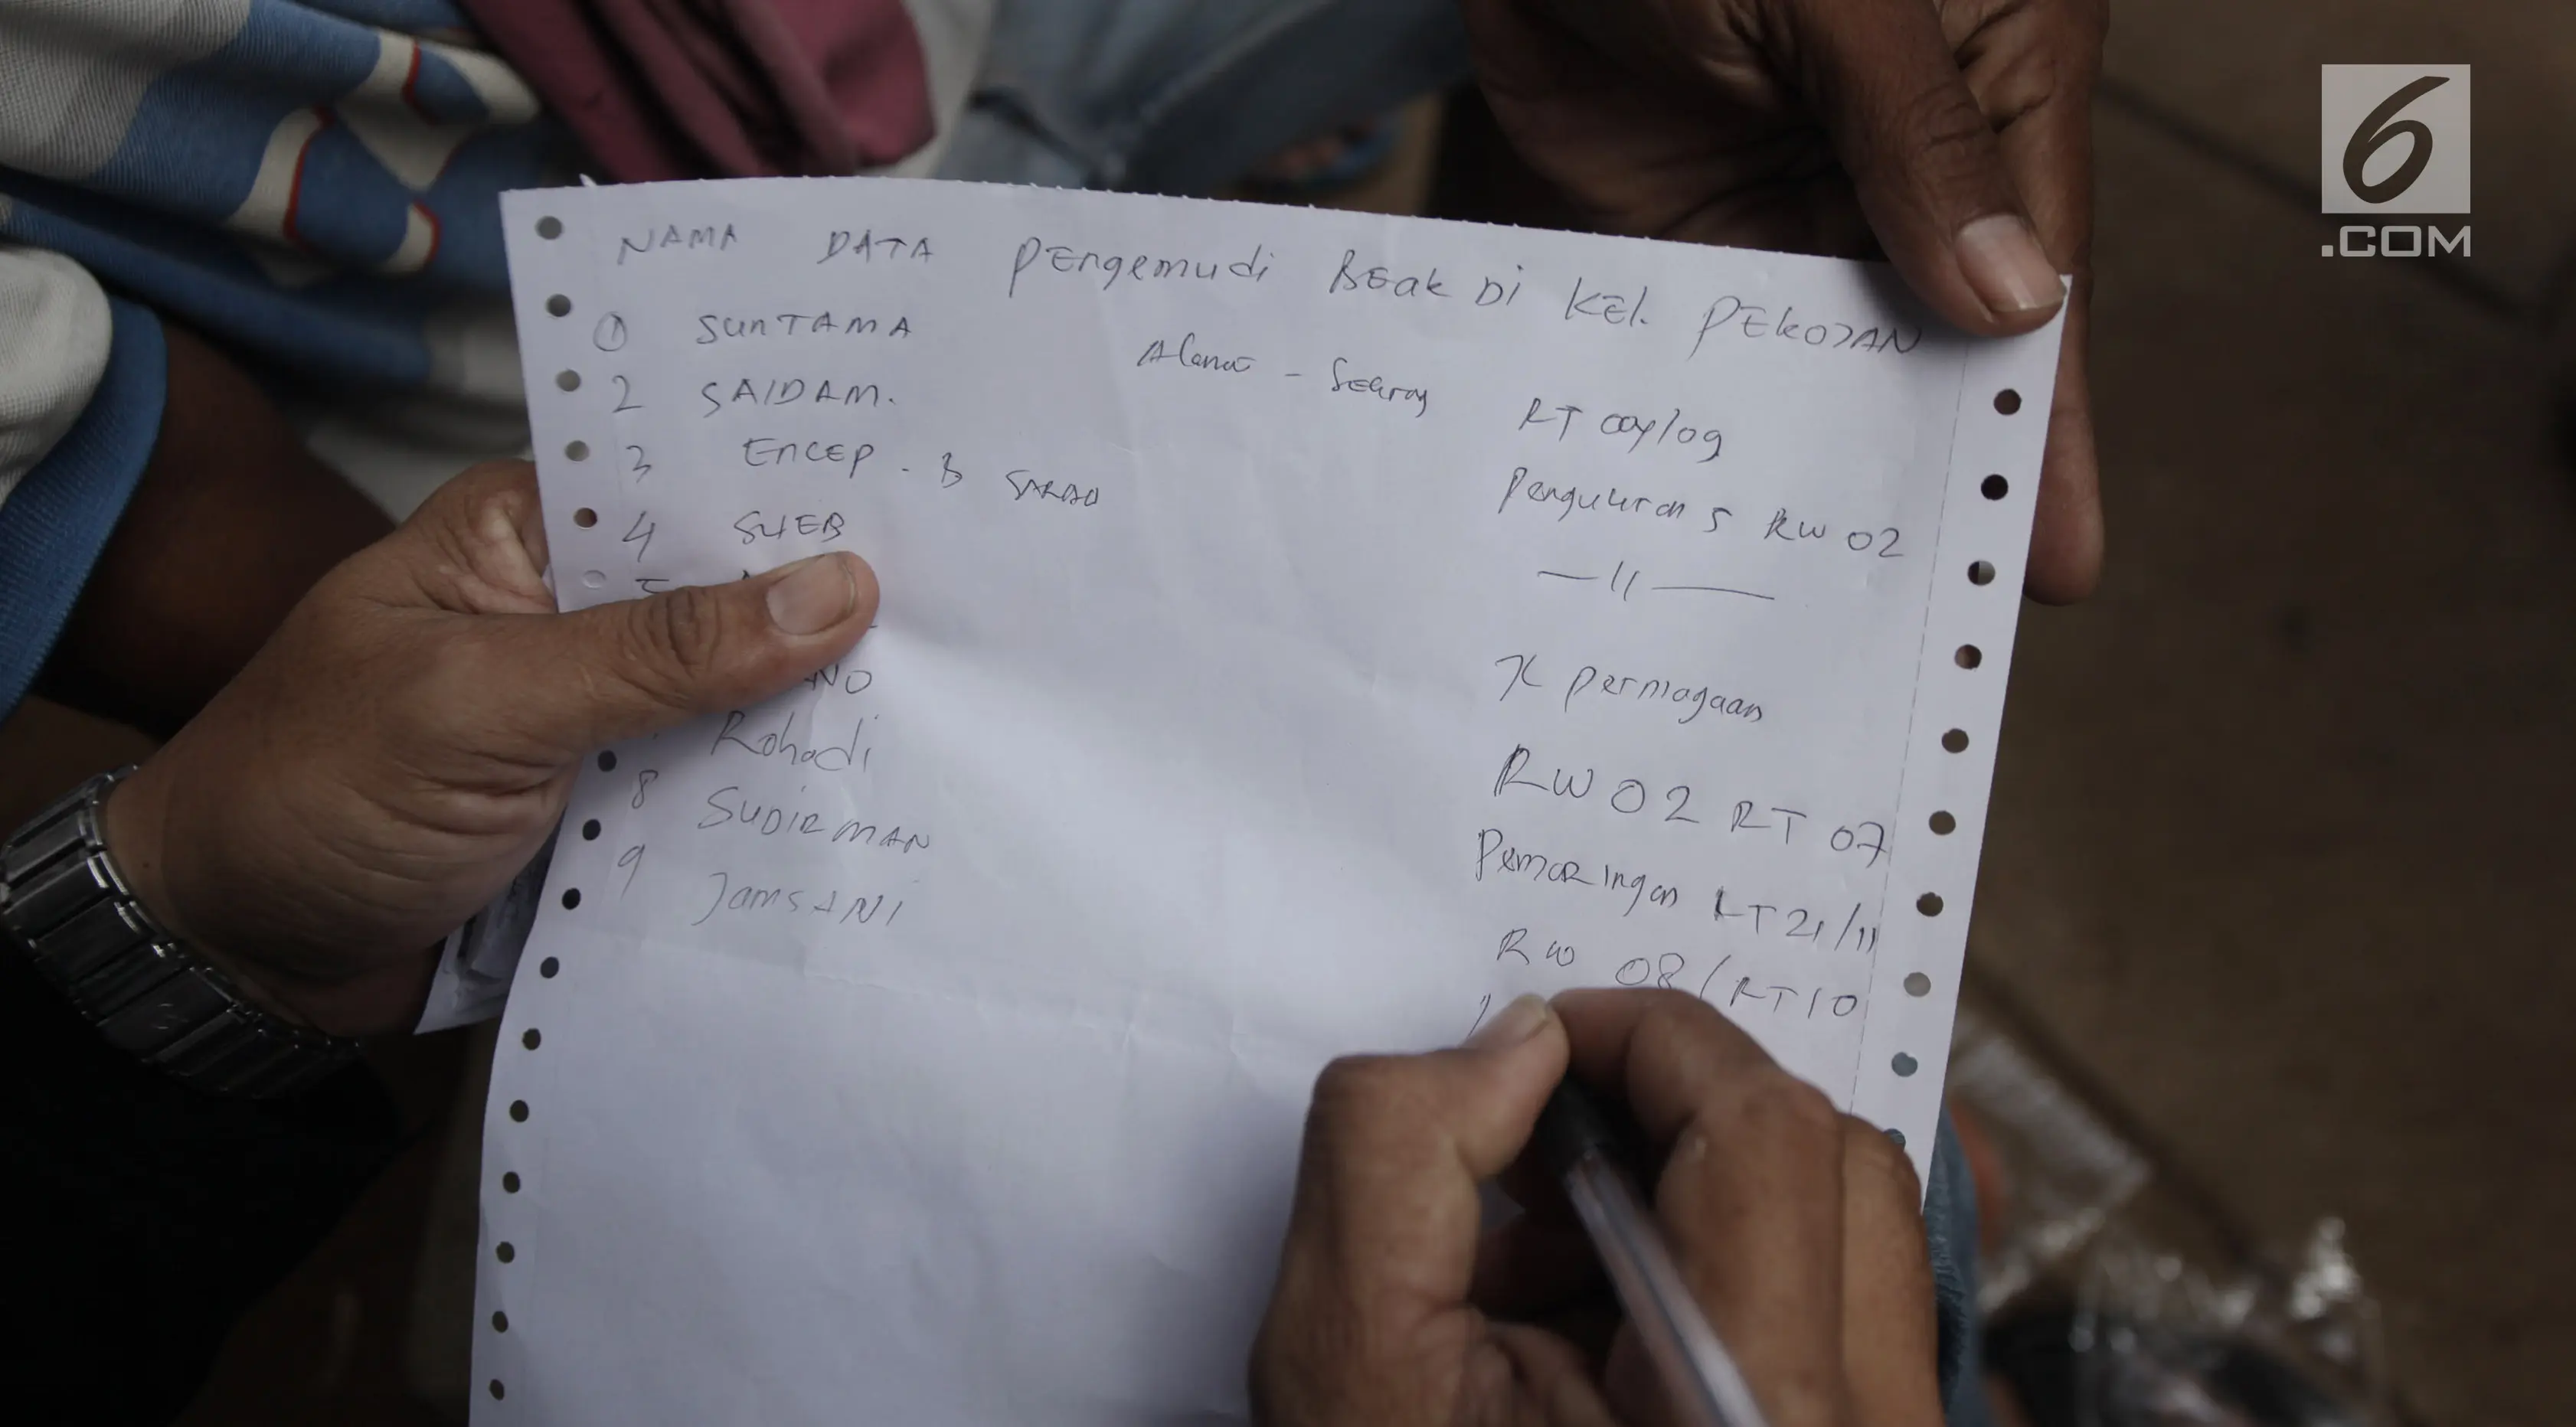 Petugas melakukan pendataan terhadap tukang becak di Kolong Flyover Bandengan Utara, Jakarta, Kamis (25/1). Becak-becak yang sudah didata ditempelkan stiker berlogo Pemprov DKI dan bertuliskan 